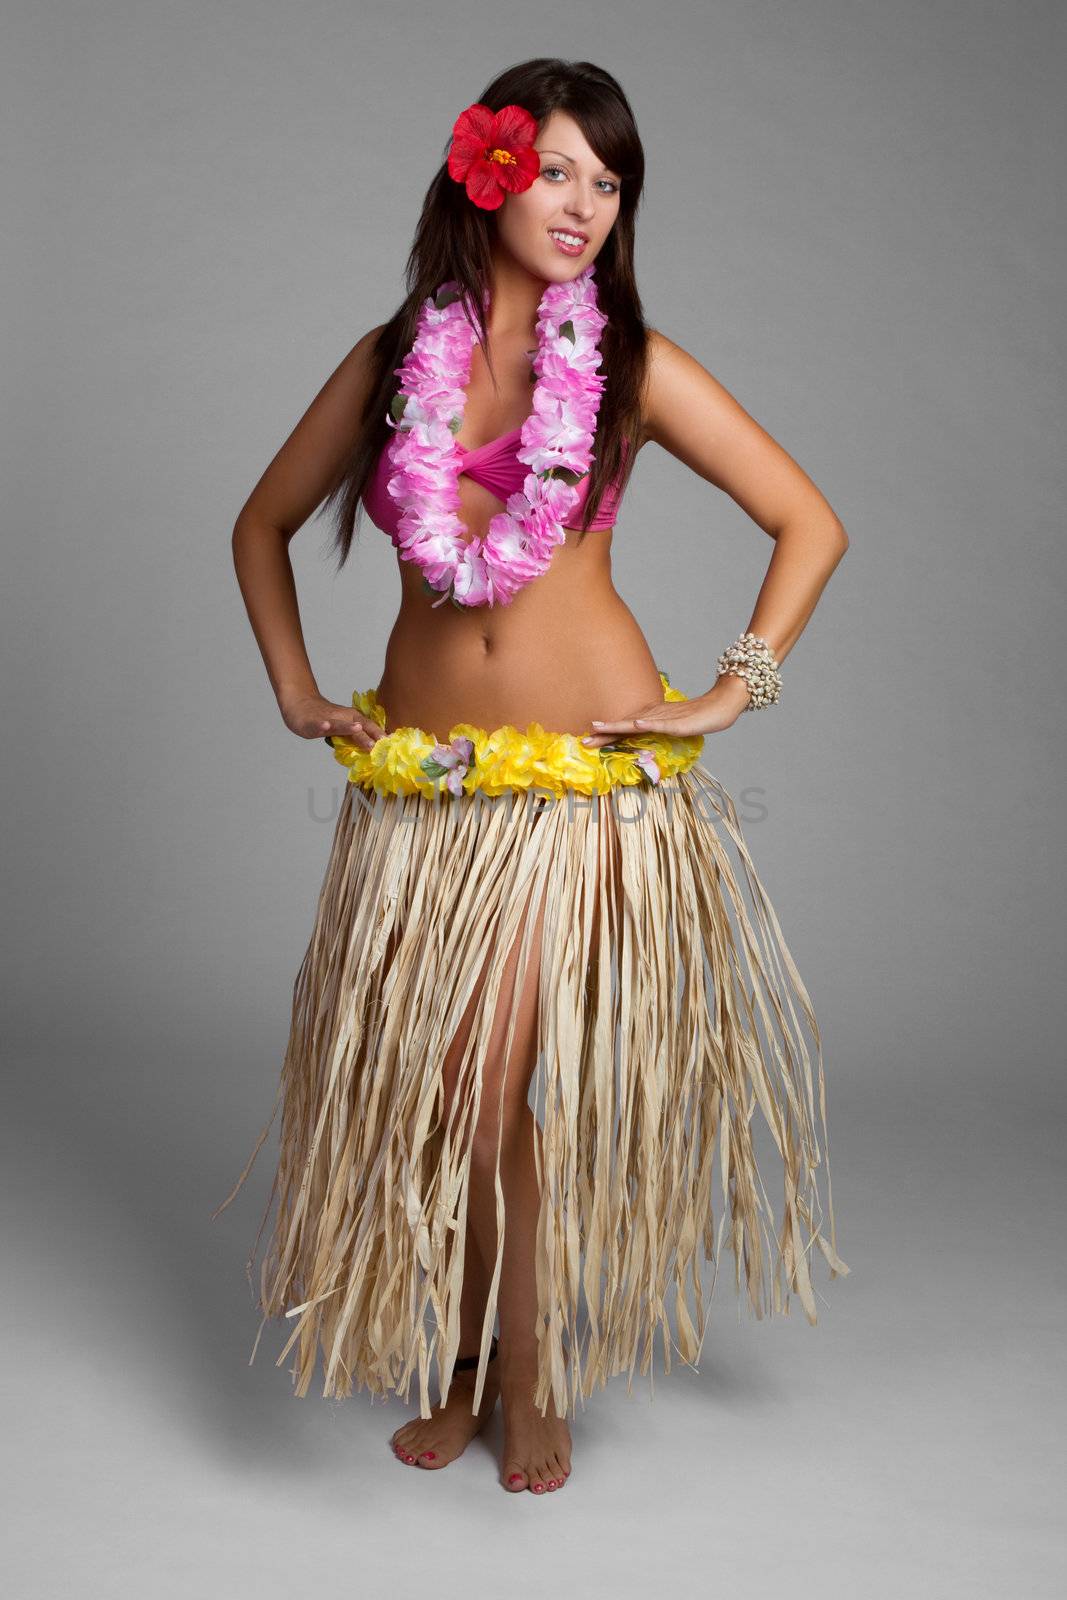 Hawaiian Hula Dancer by keeweeboy